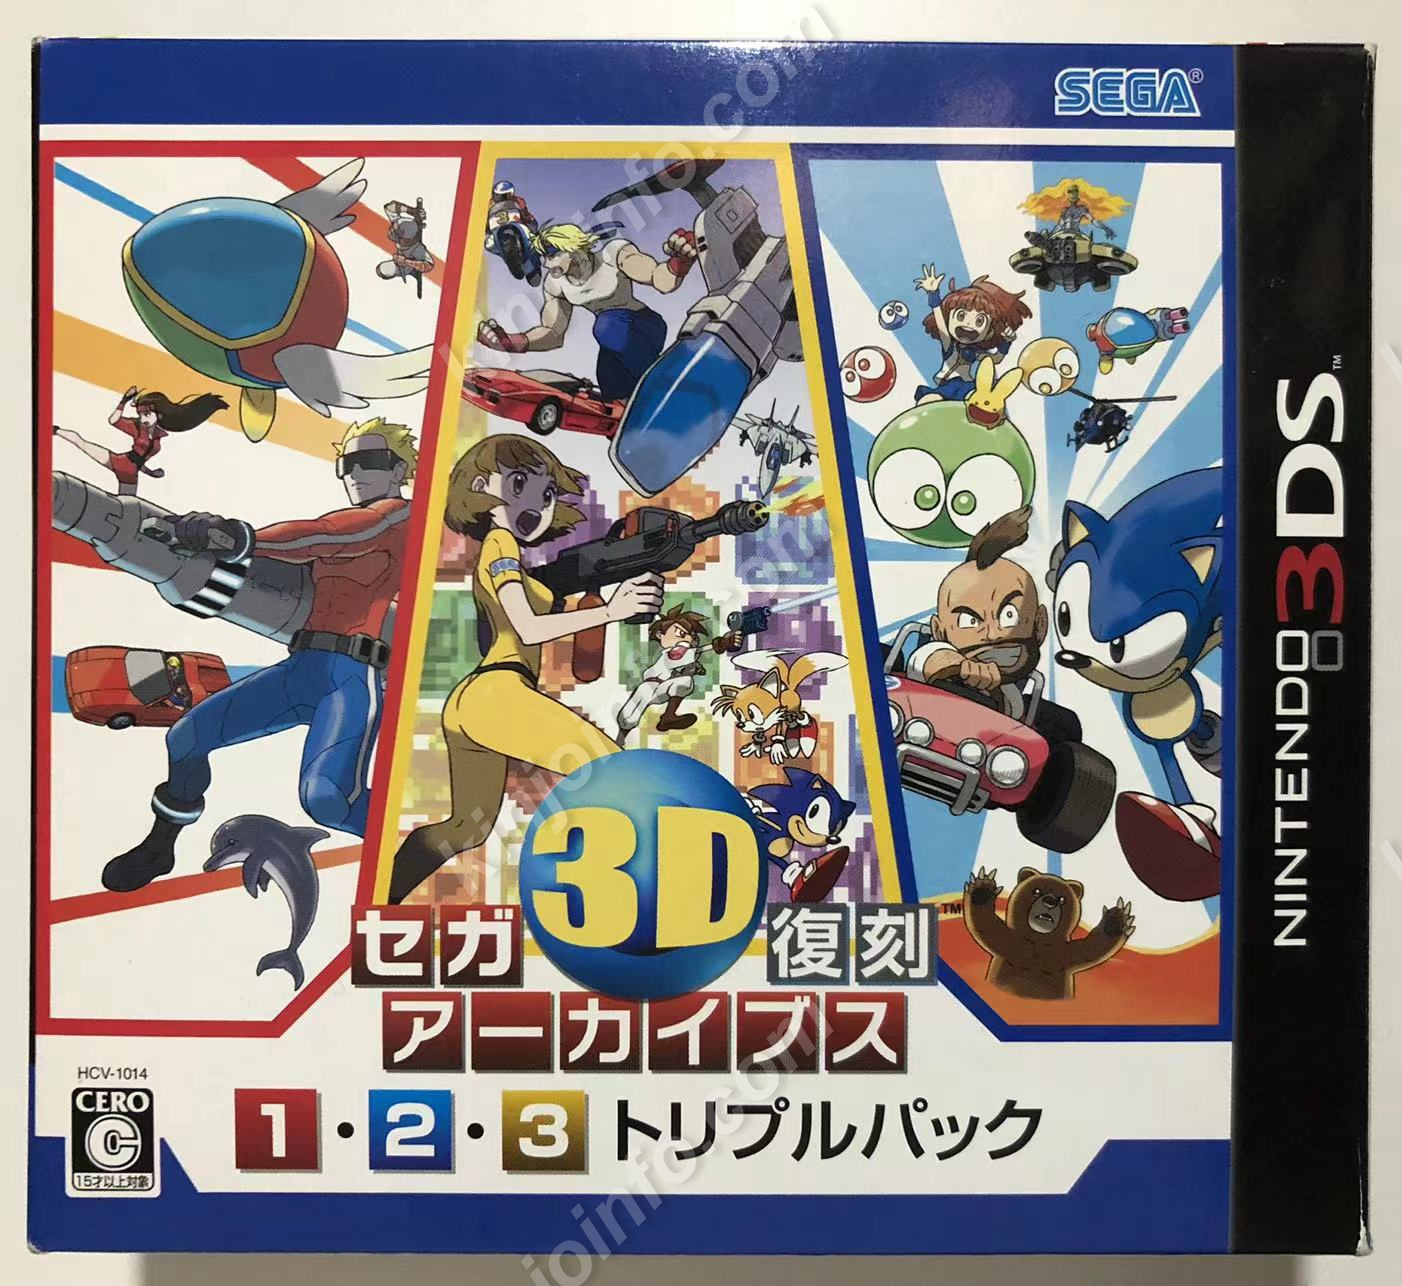 銀座店で購入 セガ3D復刻アーカイブス 1 2 3 SEGA DS 3DS レトロゲーム 携帯用ゲームソフト